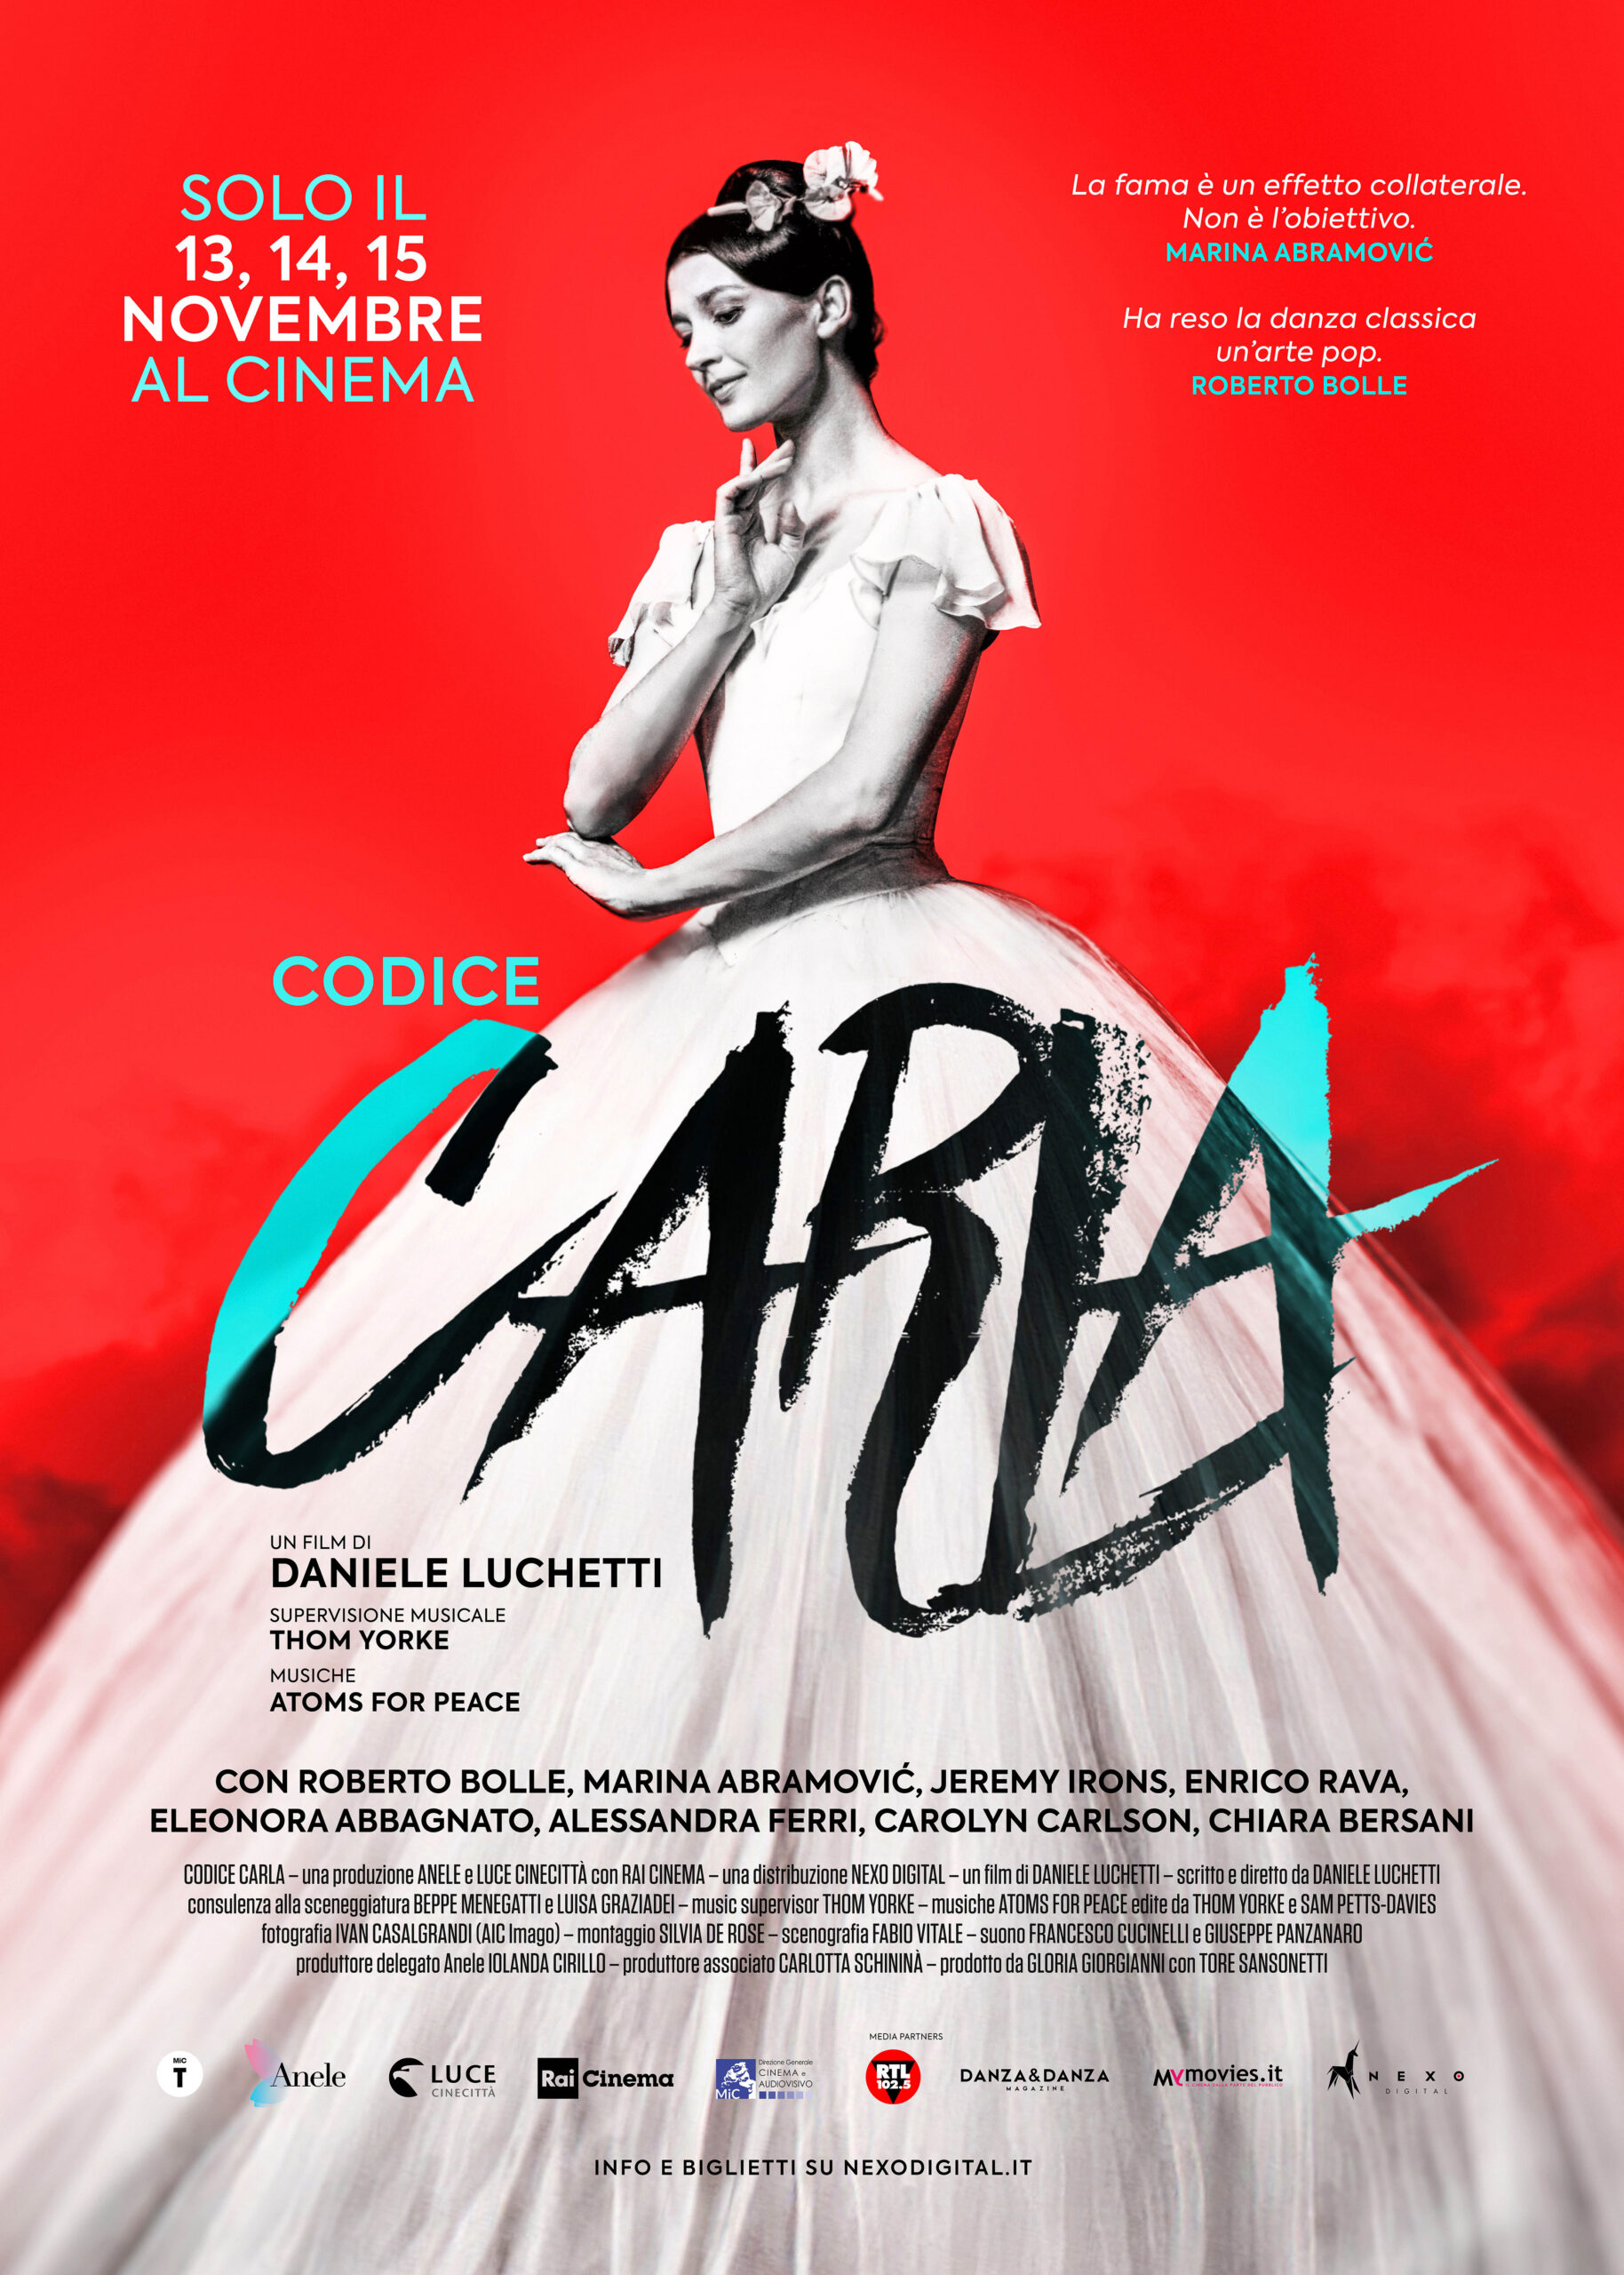 Codice Carla, il film documentario di Daniele Luchetti su Carla Fracci